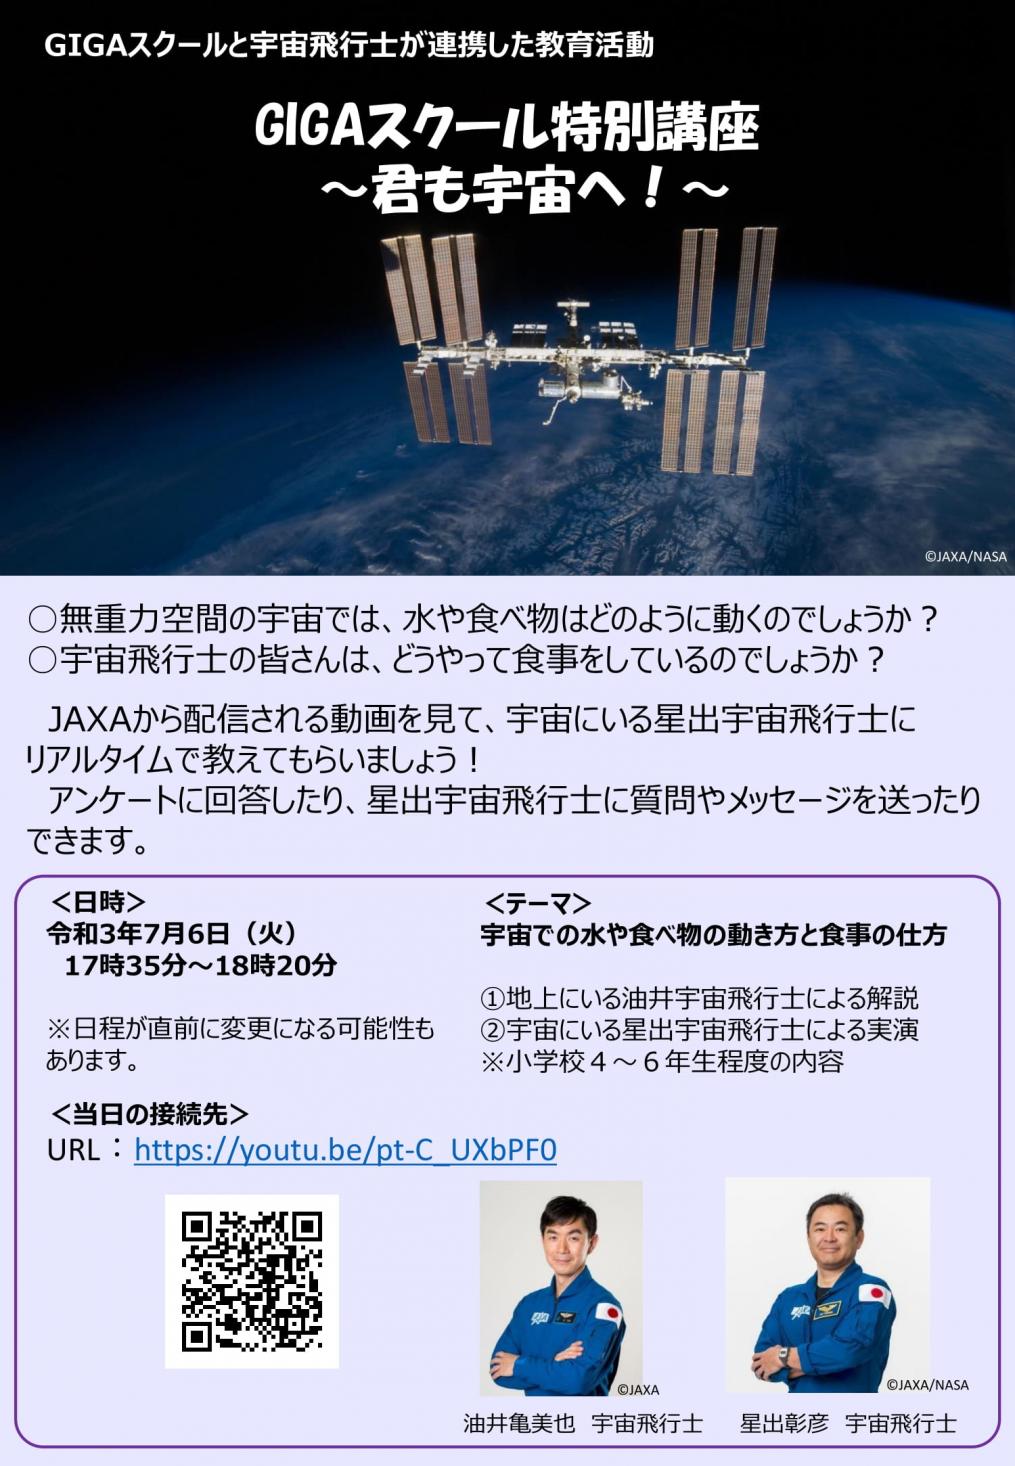 【事務連絡】GIGAスクールと宇宙飛行士が連携した教育活動の開催日時等について-1